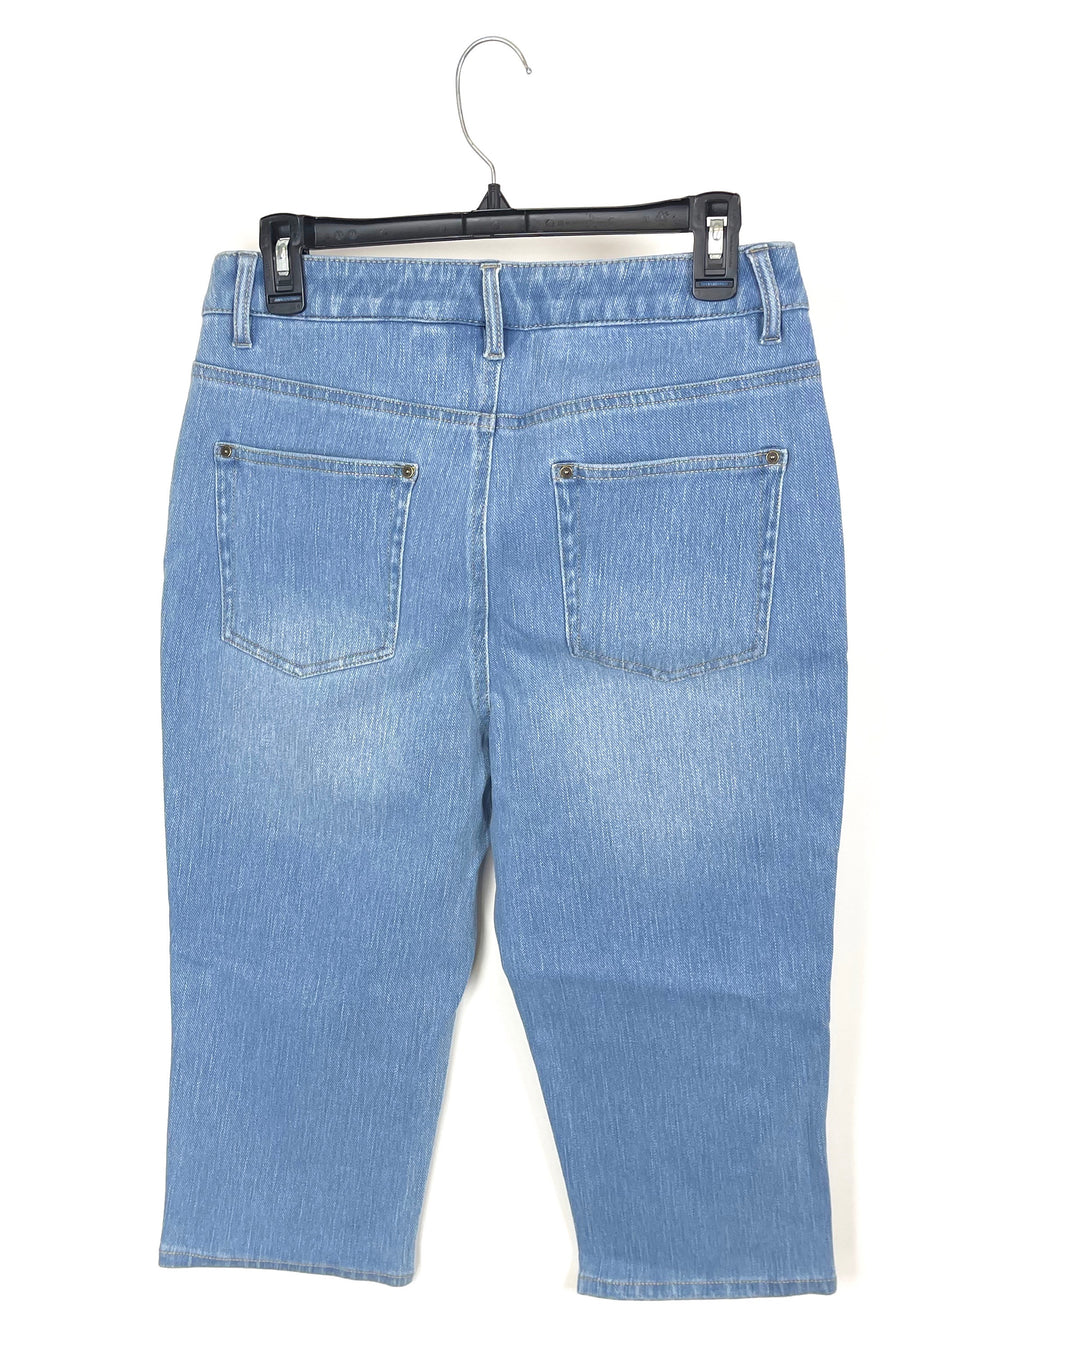 Light Blue Crop Pants - Size 6/8